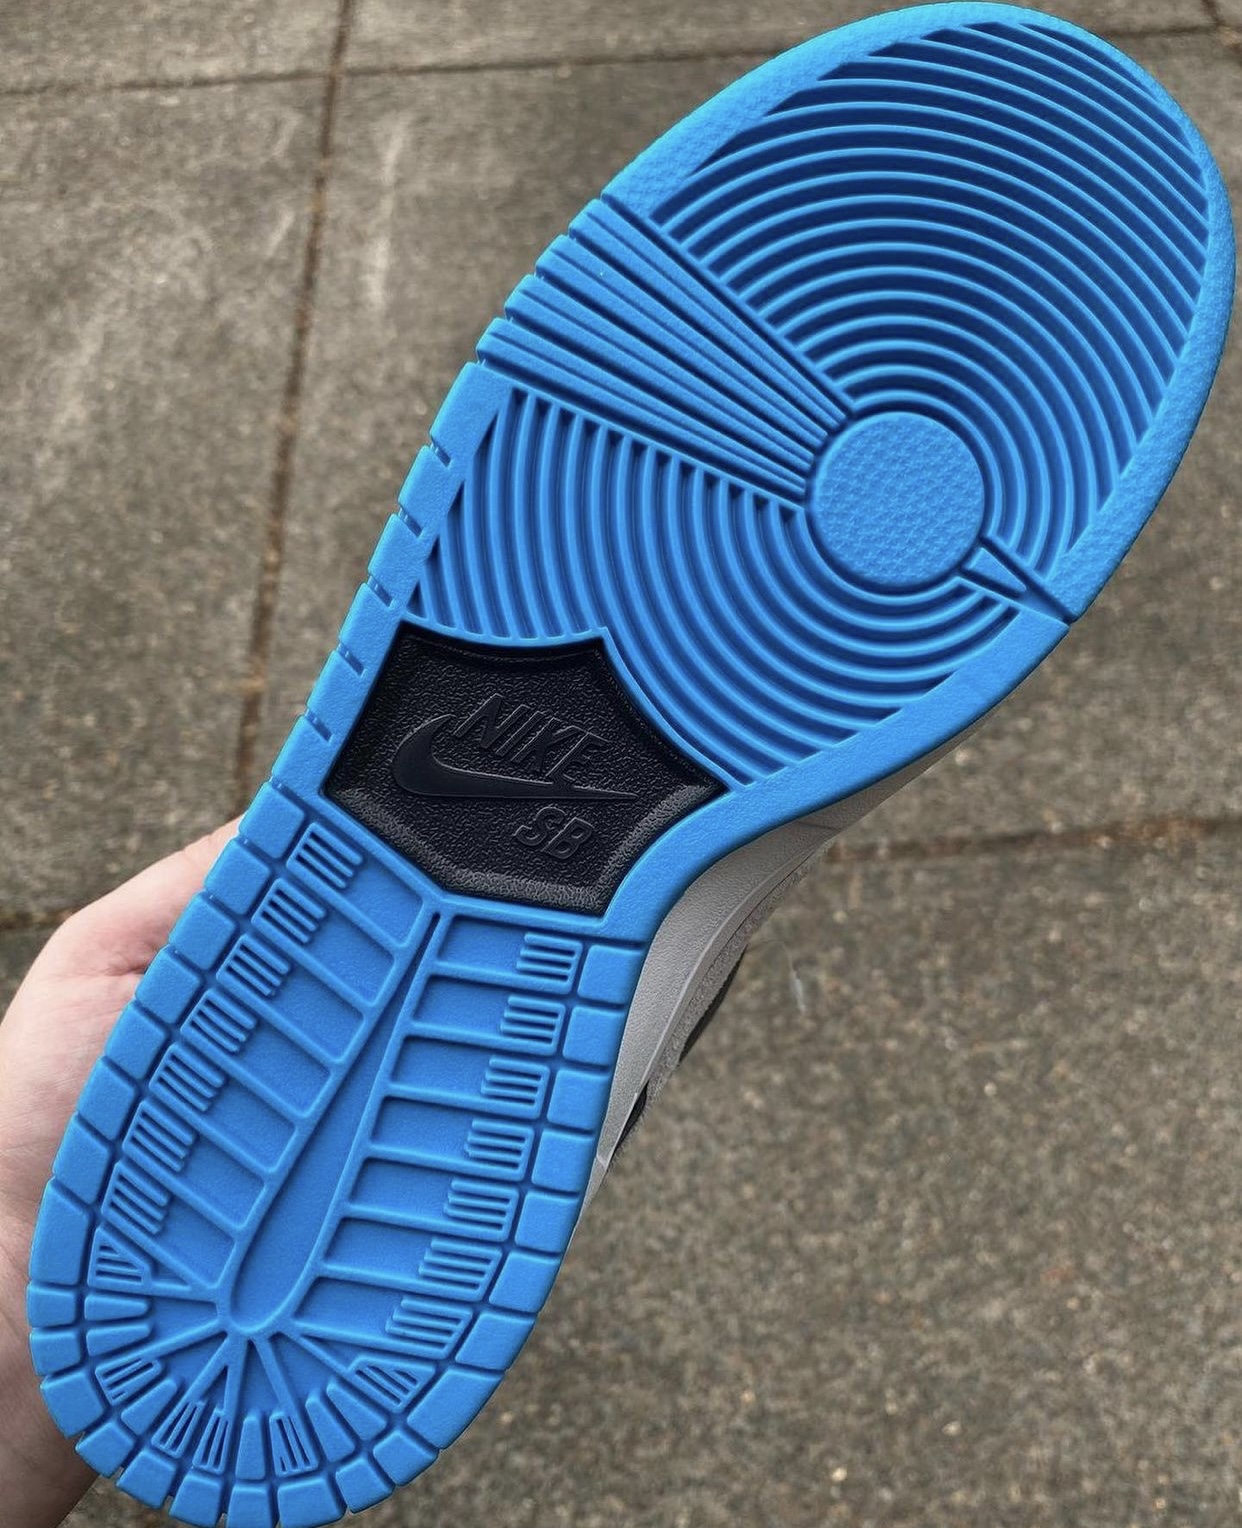 ナイキ SB ダンク ロー "レーザー ブルー" Nike-SB-Dunk-Low-Laser-Blue-look-sole